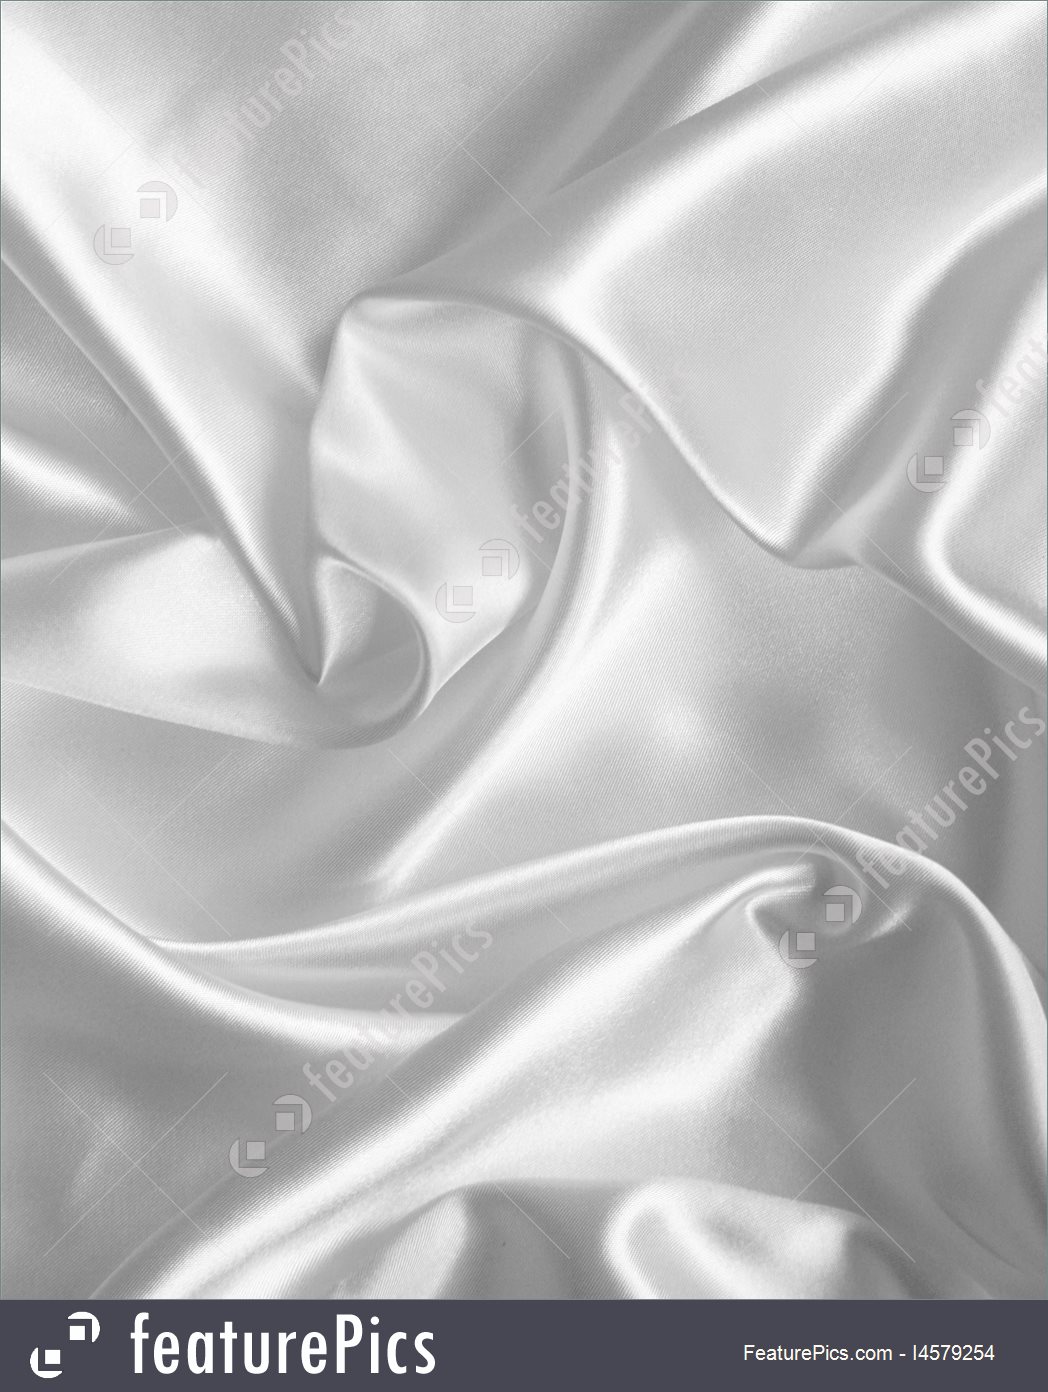 Smooth Elegant White Silk Or Satin Texture As Wedding Background